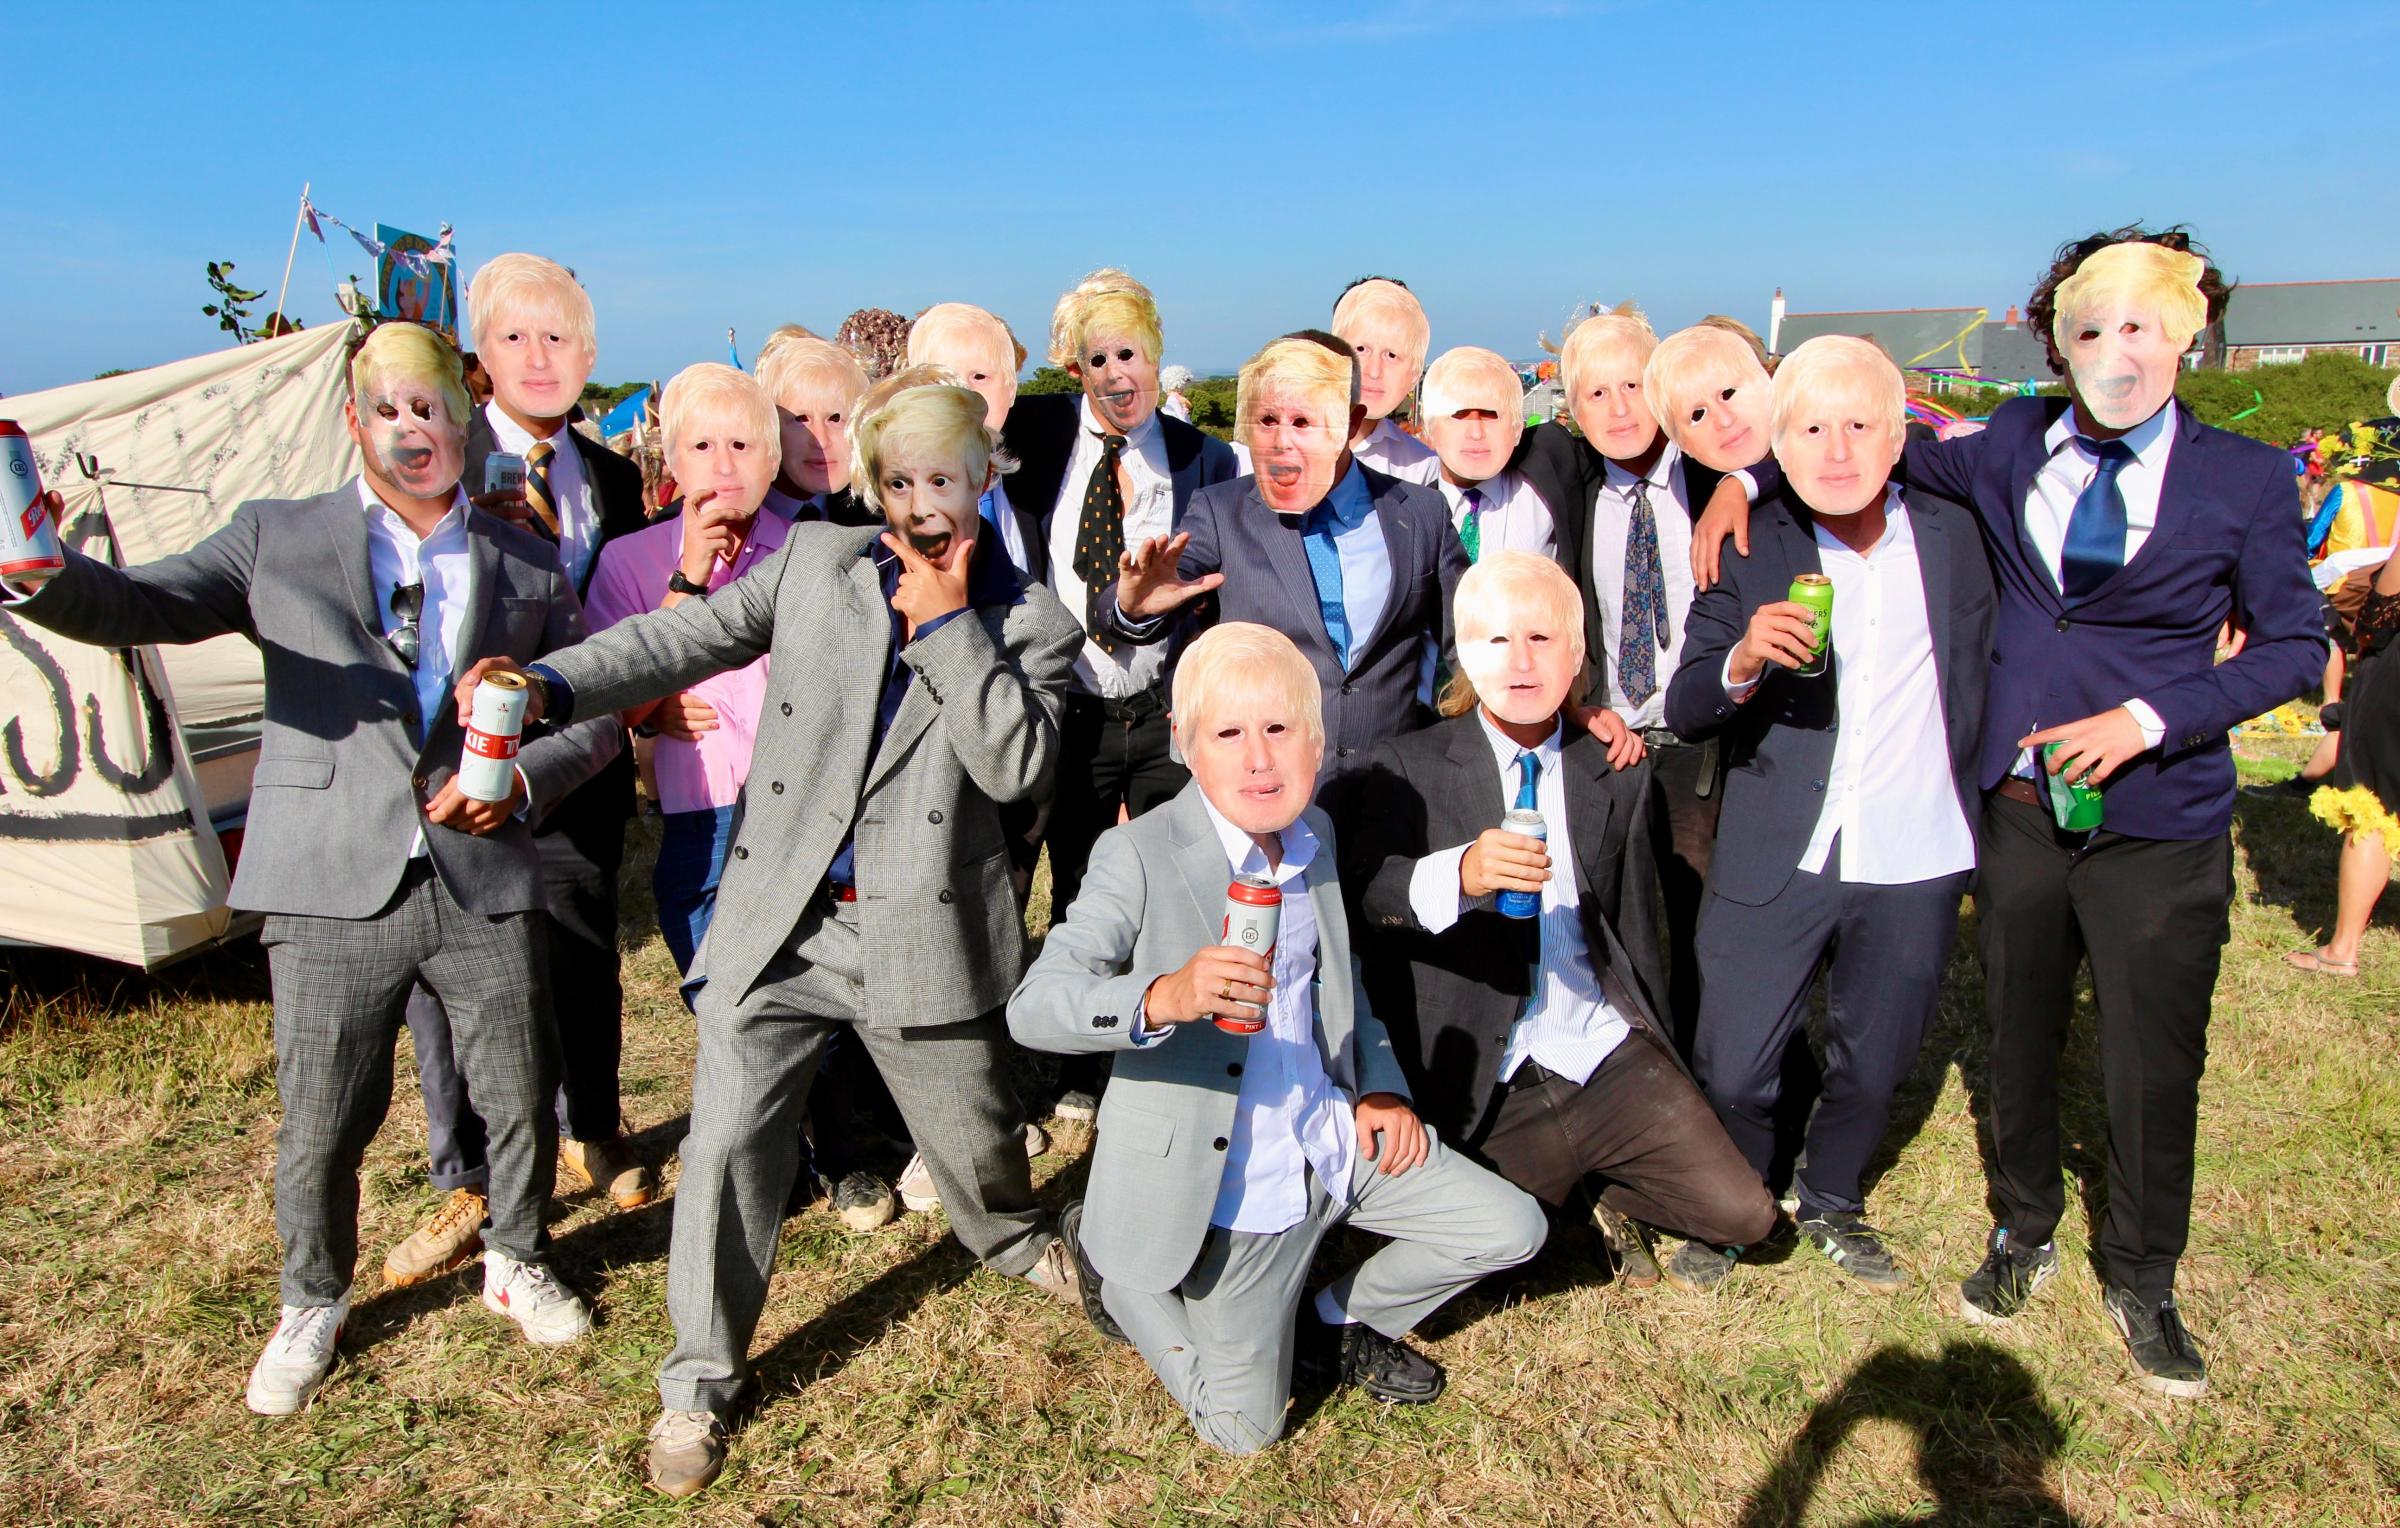 So many Boris Johnsons!! Credit: John Hartley